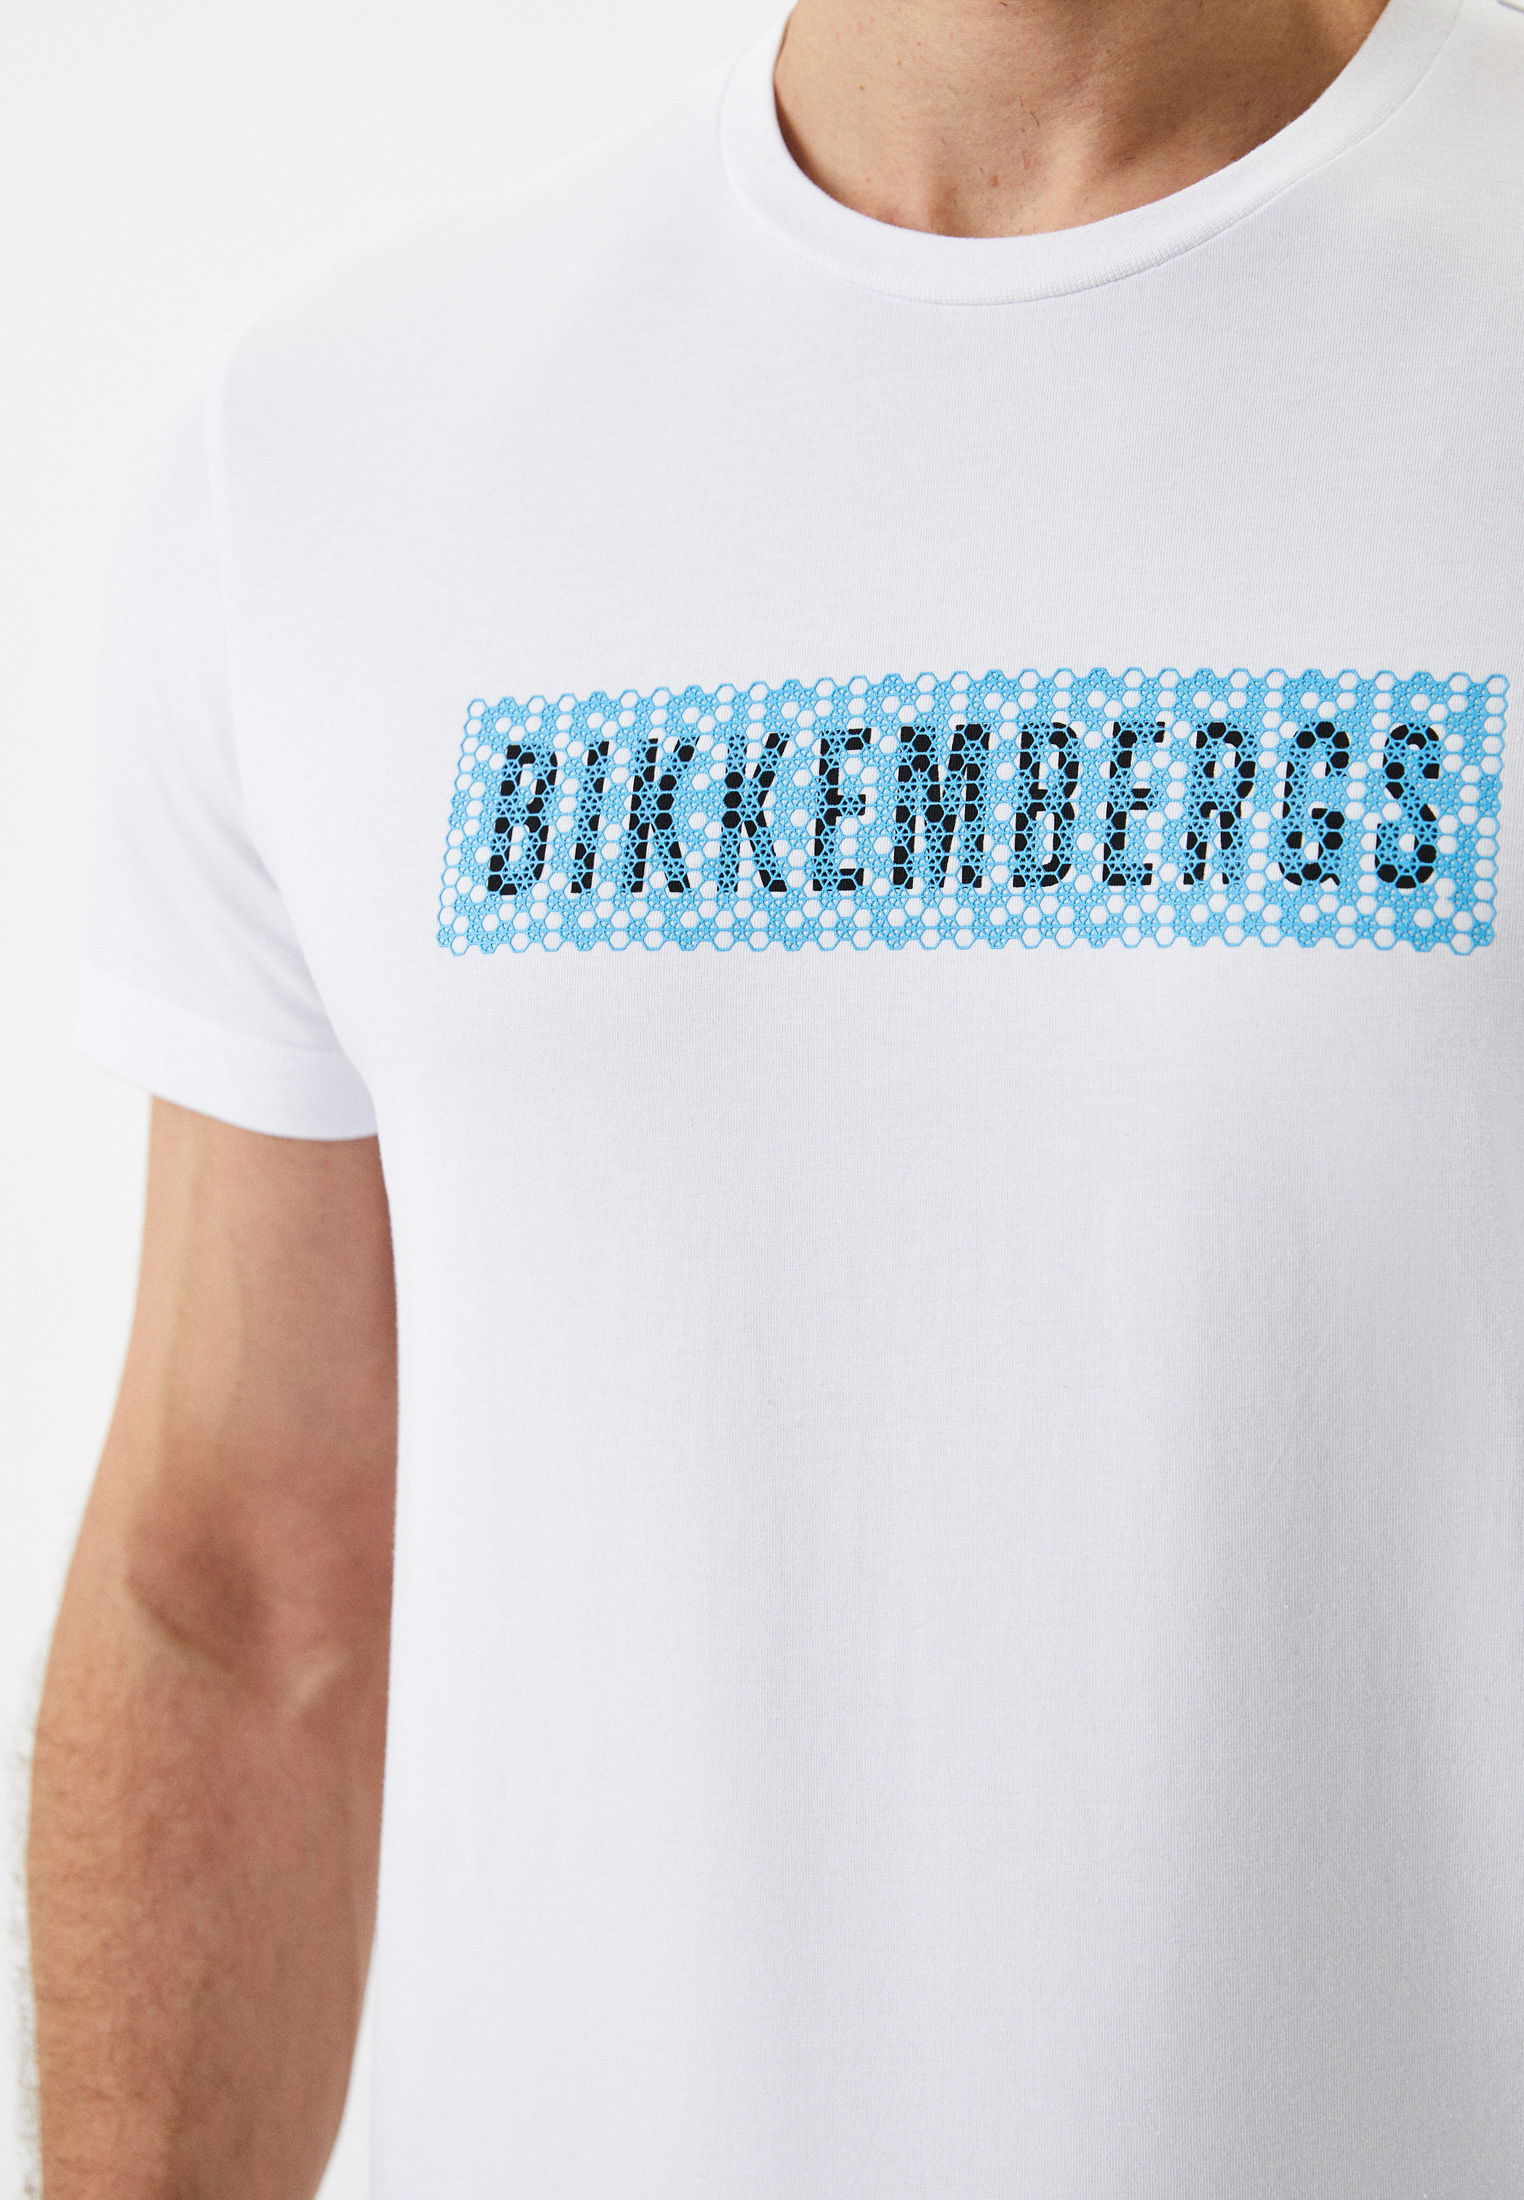 Мужская футболка Bikkembergs (Биккембергс) C 4 101 04 E 2231: изображение 4